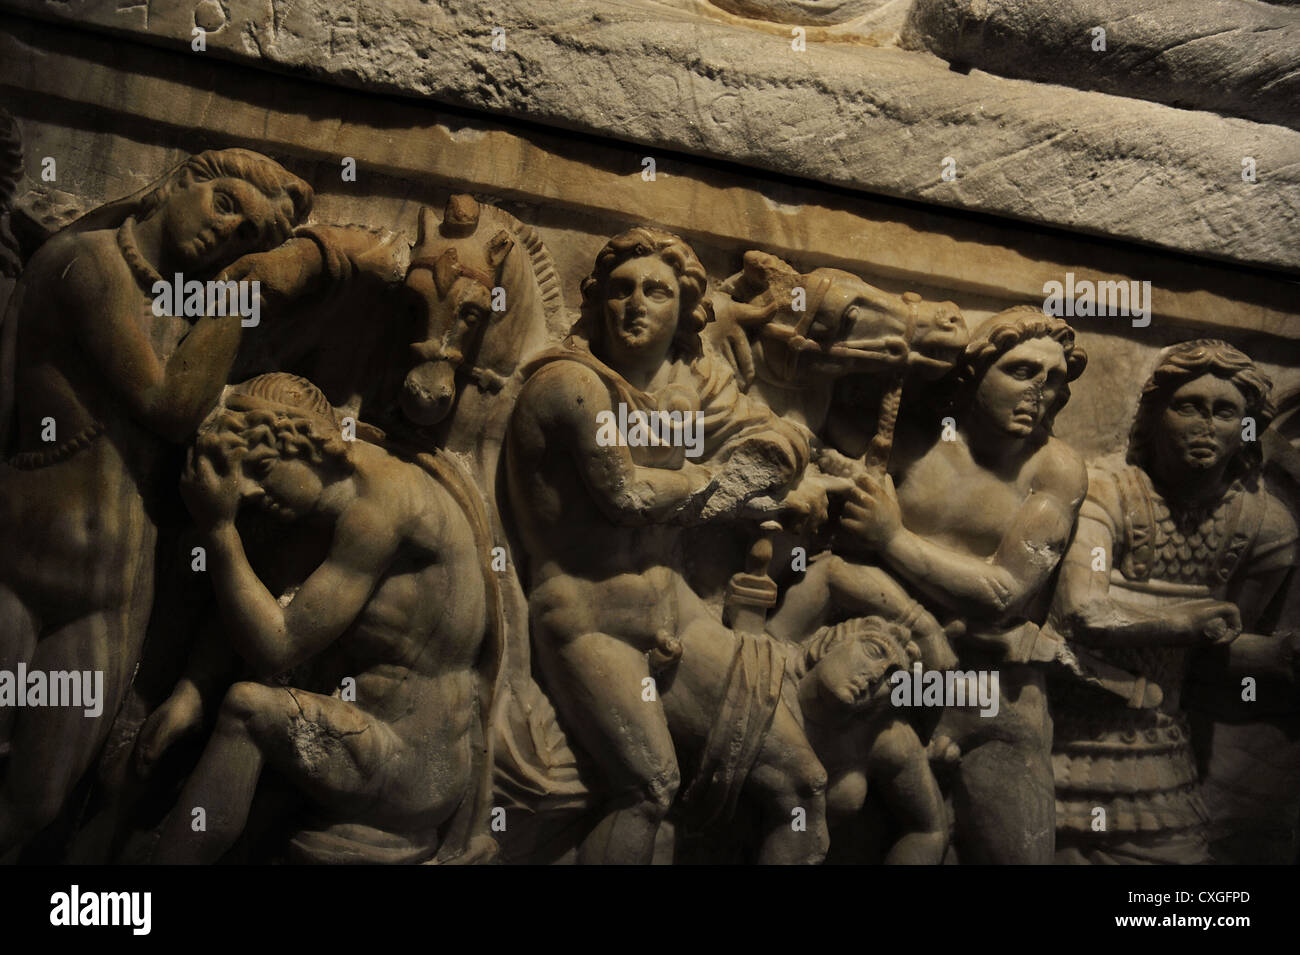 Cineray Urnen auf Podium. Kammergrab der Pruni Familie in der Nähe von Chiusi, Etrurien. 200-100 v. Chr. Reliefs. Ny Carlsberg Glyptotek. Stockfoto